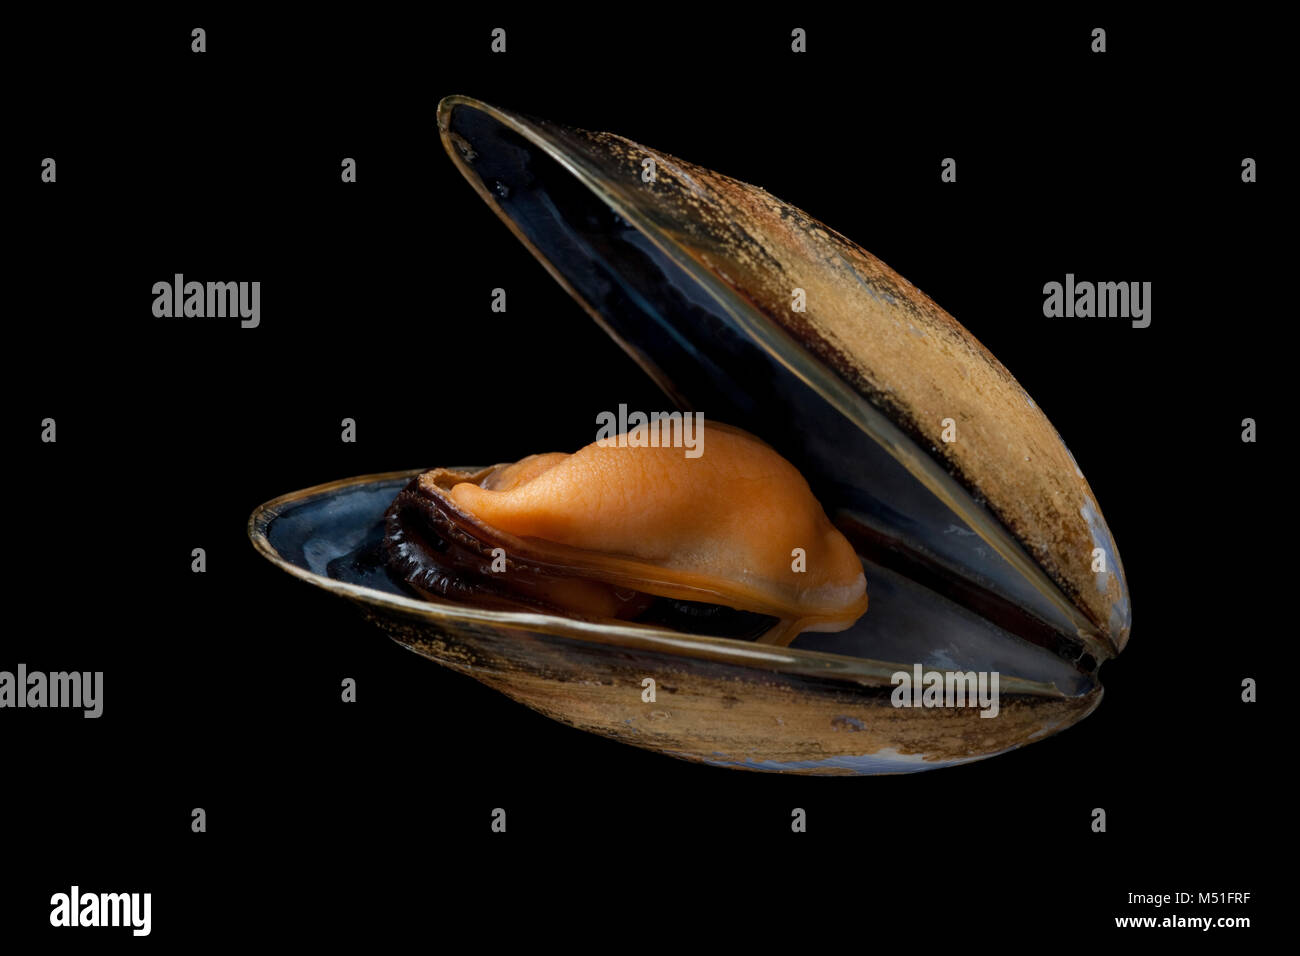 Ein gekochtes, Seil-gewachsen Mussel - Mytilus edulis, gekauft von einem Supermarkt. Auf einem schwarzen Hintergrund fotografiert. Dorset England UK GB Stockfoto